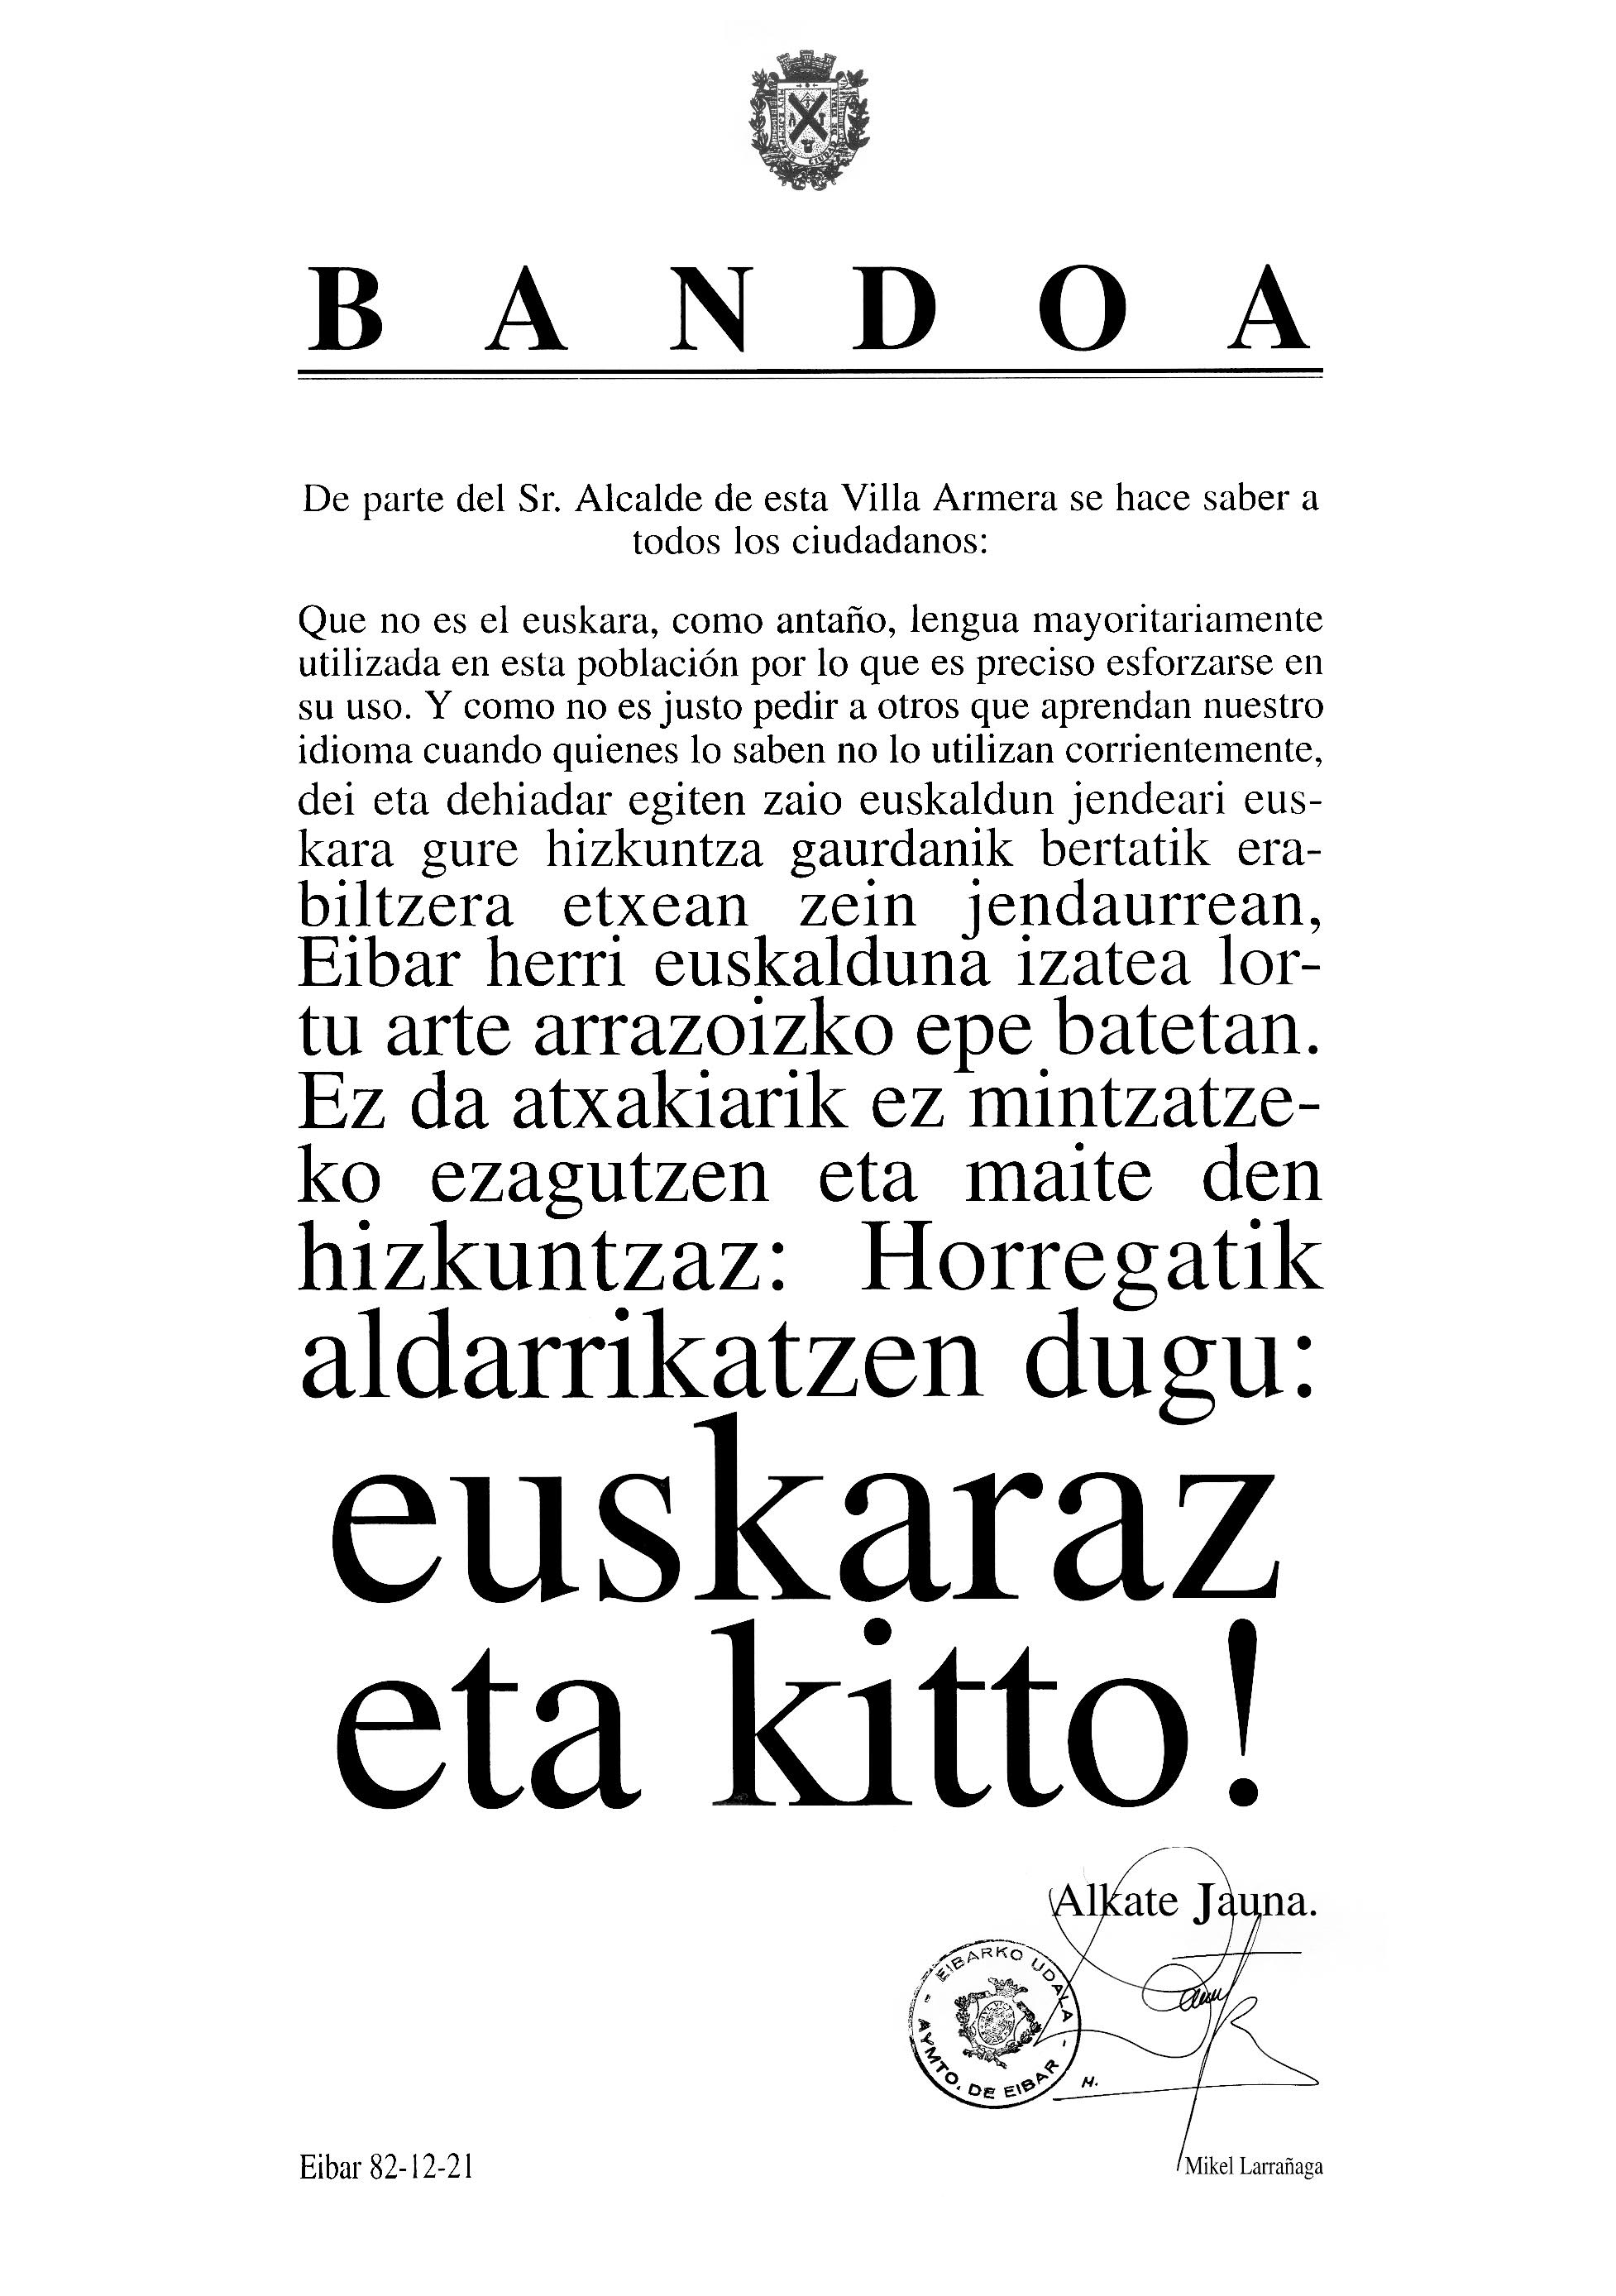 El bando “…euskaraz eta kitto!” cumple 40 años el día 21 de diciembre, día de Santo Tomás 